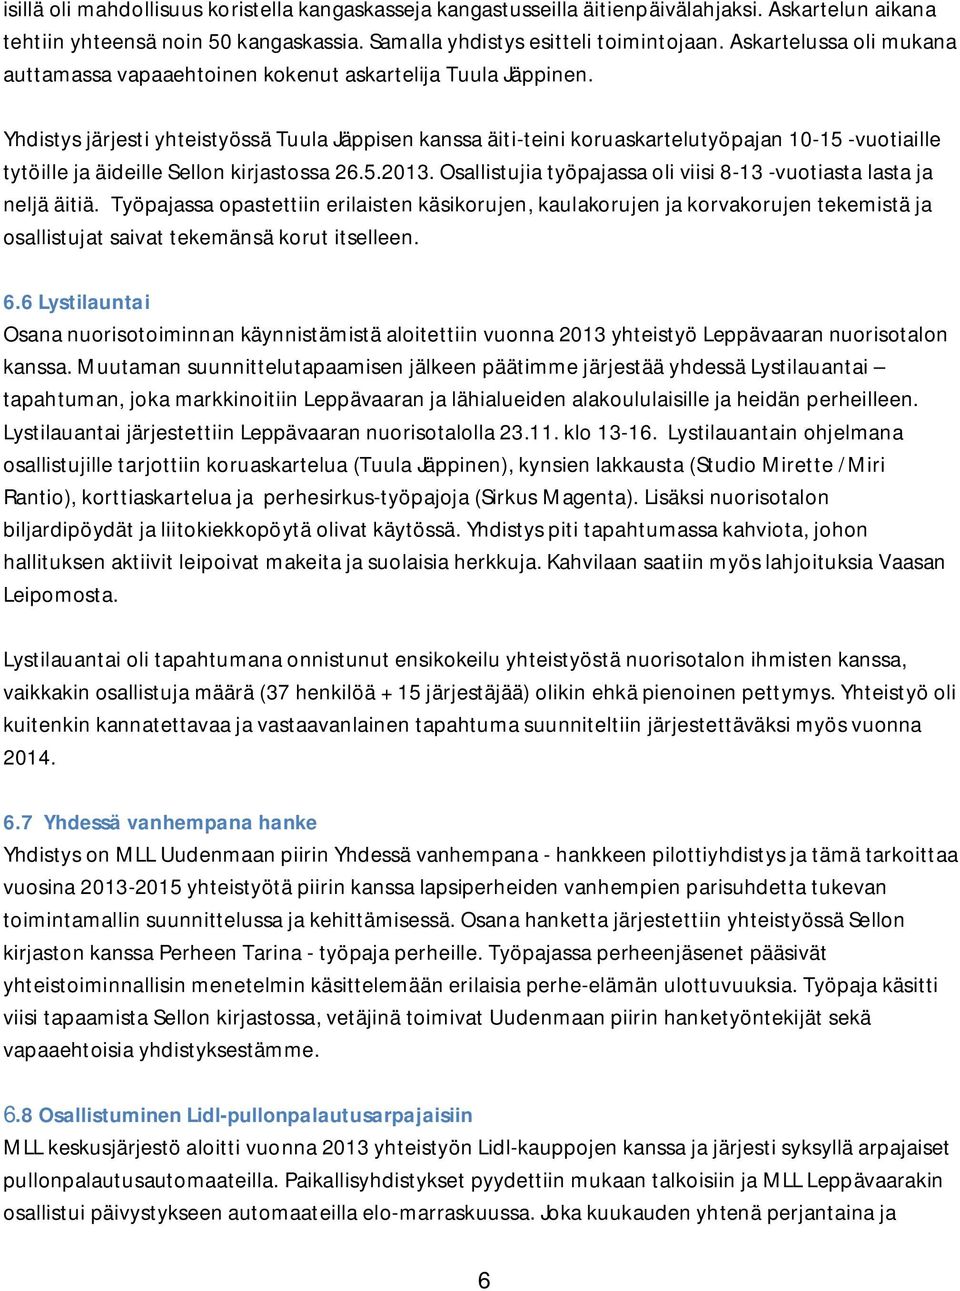 Yhdistys järjesti yhteistyössä Tuula Jäppisen kanssa äiti-teini koruaskartelutyöpajan 10-15 -vuotiaille tytöille ja äideille Sellon kirjastossa 26.5.2013.